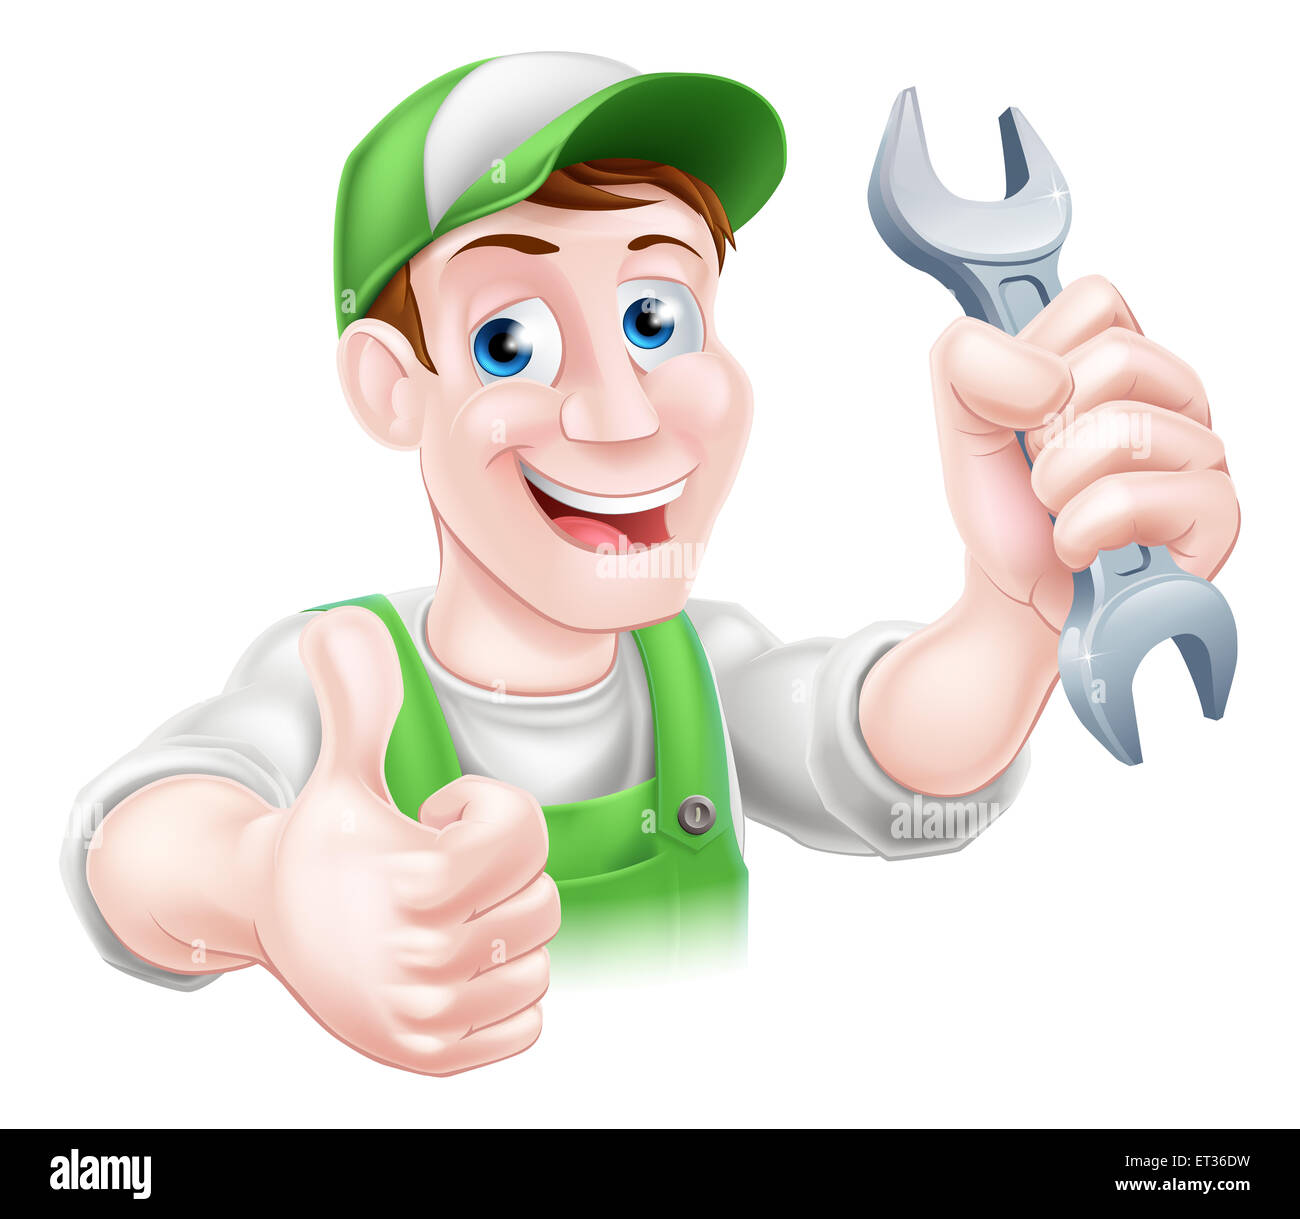 Ein glückliches Cartoon Klempner oder Mechaniker Mann halten ein Schraubenschlüssel oder Schraubenschlüssel und geben einen Daumen nach oben Stockfoto